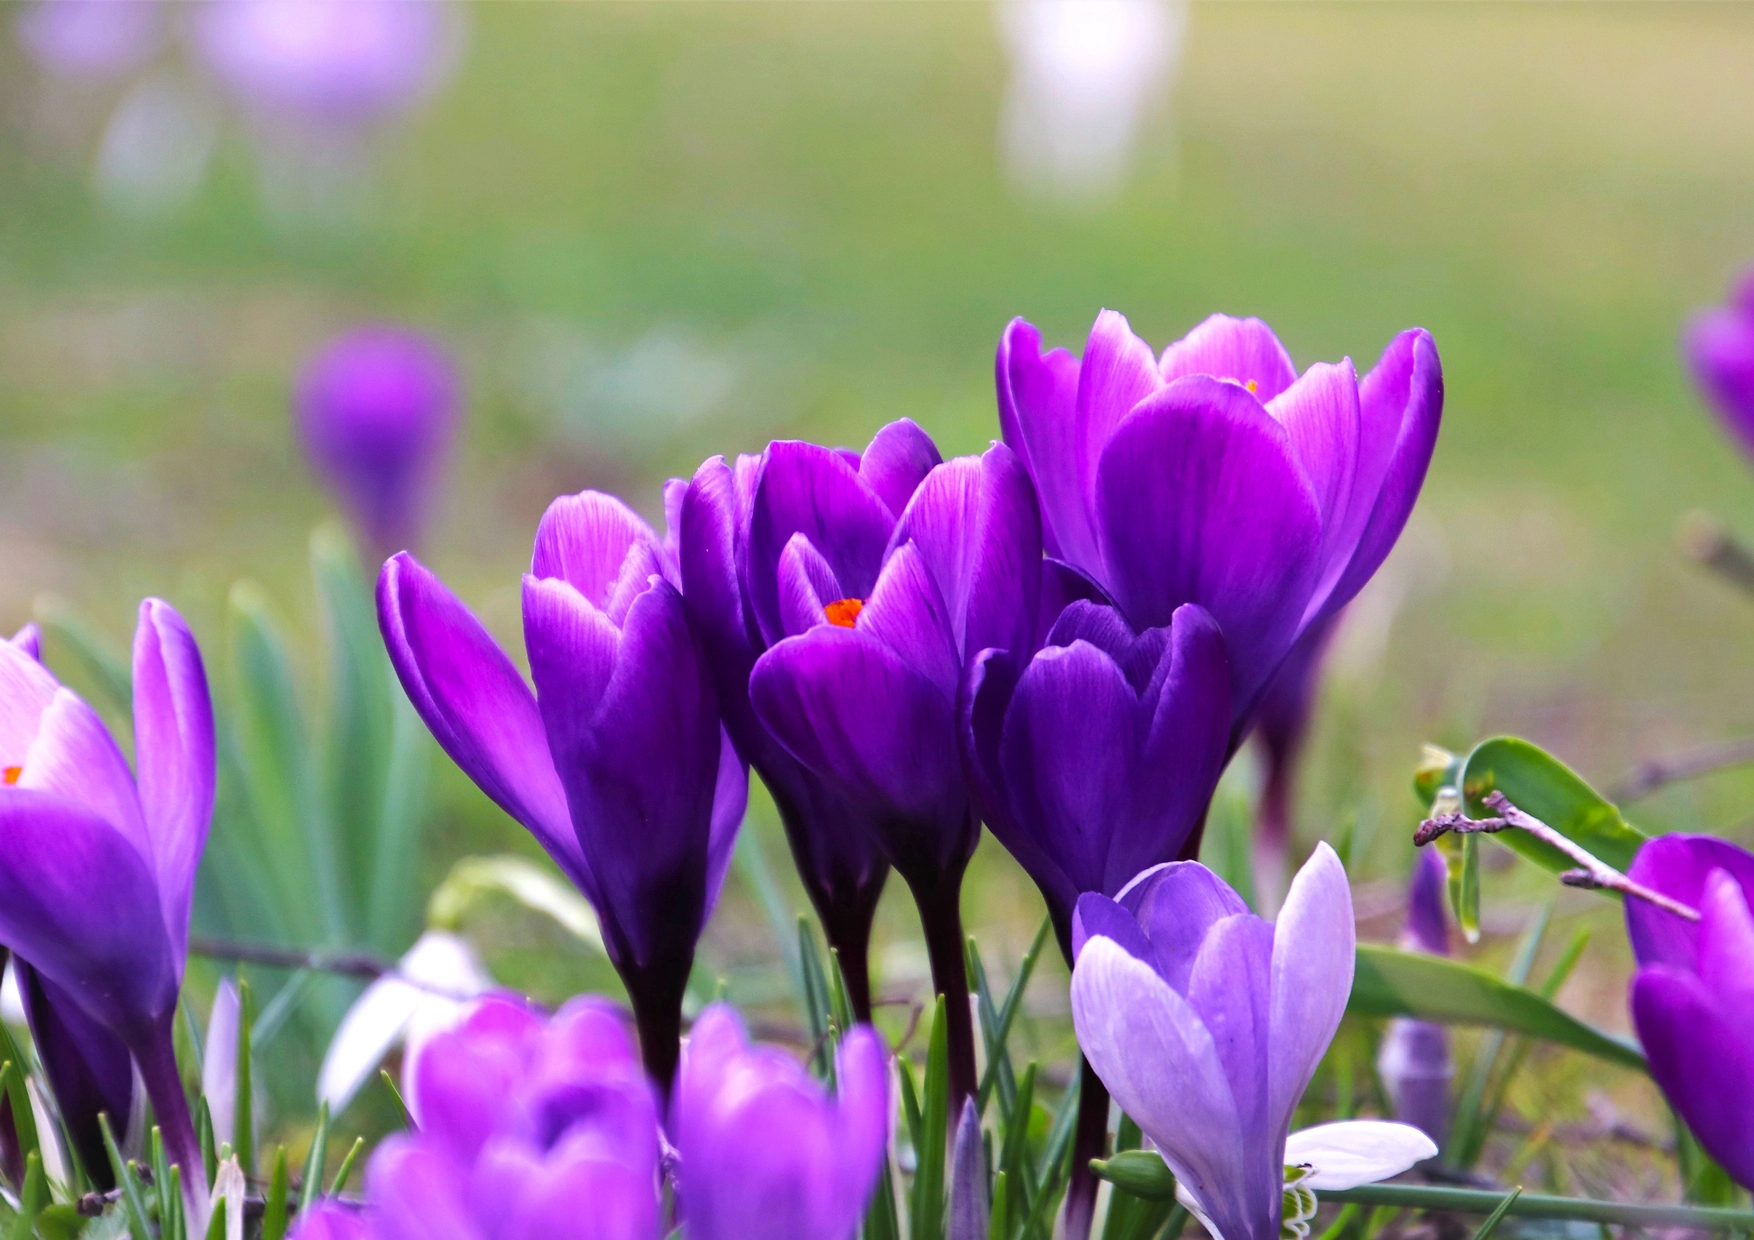 Image of a bouquet violet